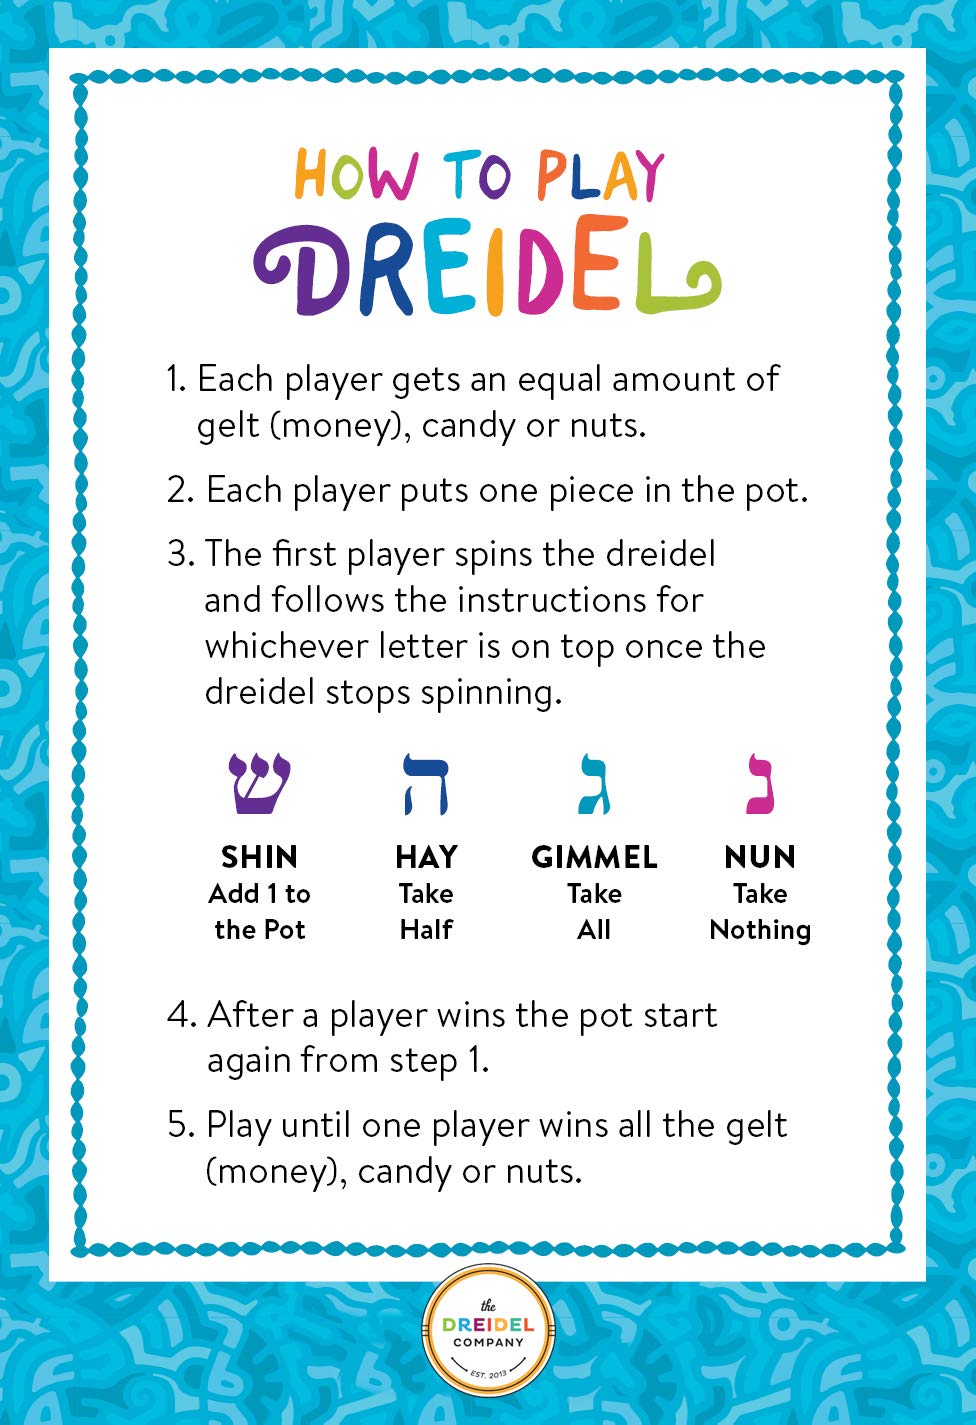 Let's Play Dreidel The Hanukkah Game Extra Large Blue & White Wood Dreidels - Instructions Included! - D10 (2-Pack XL Dreidels)